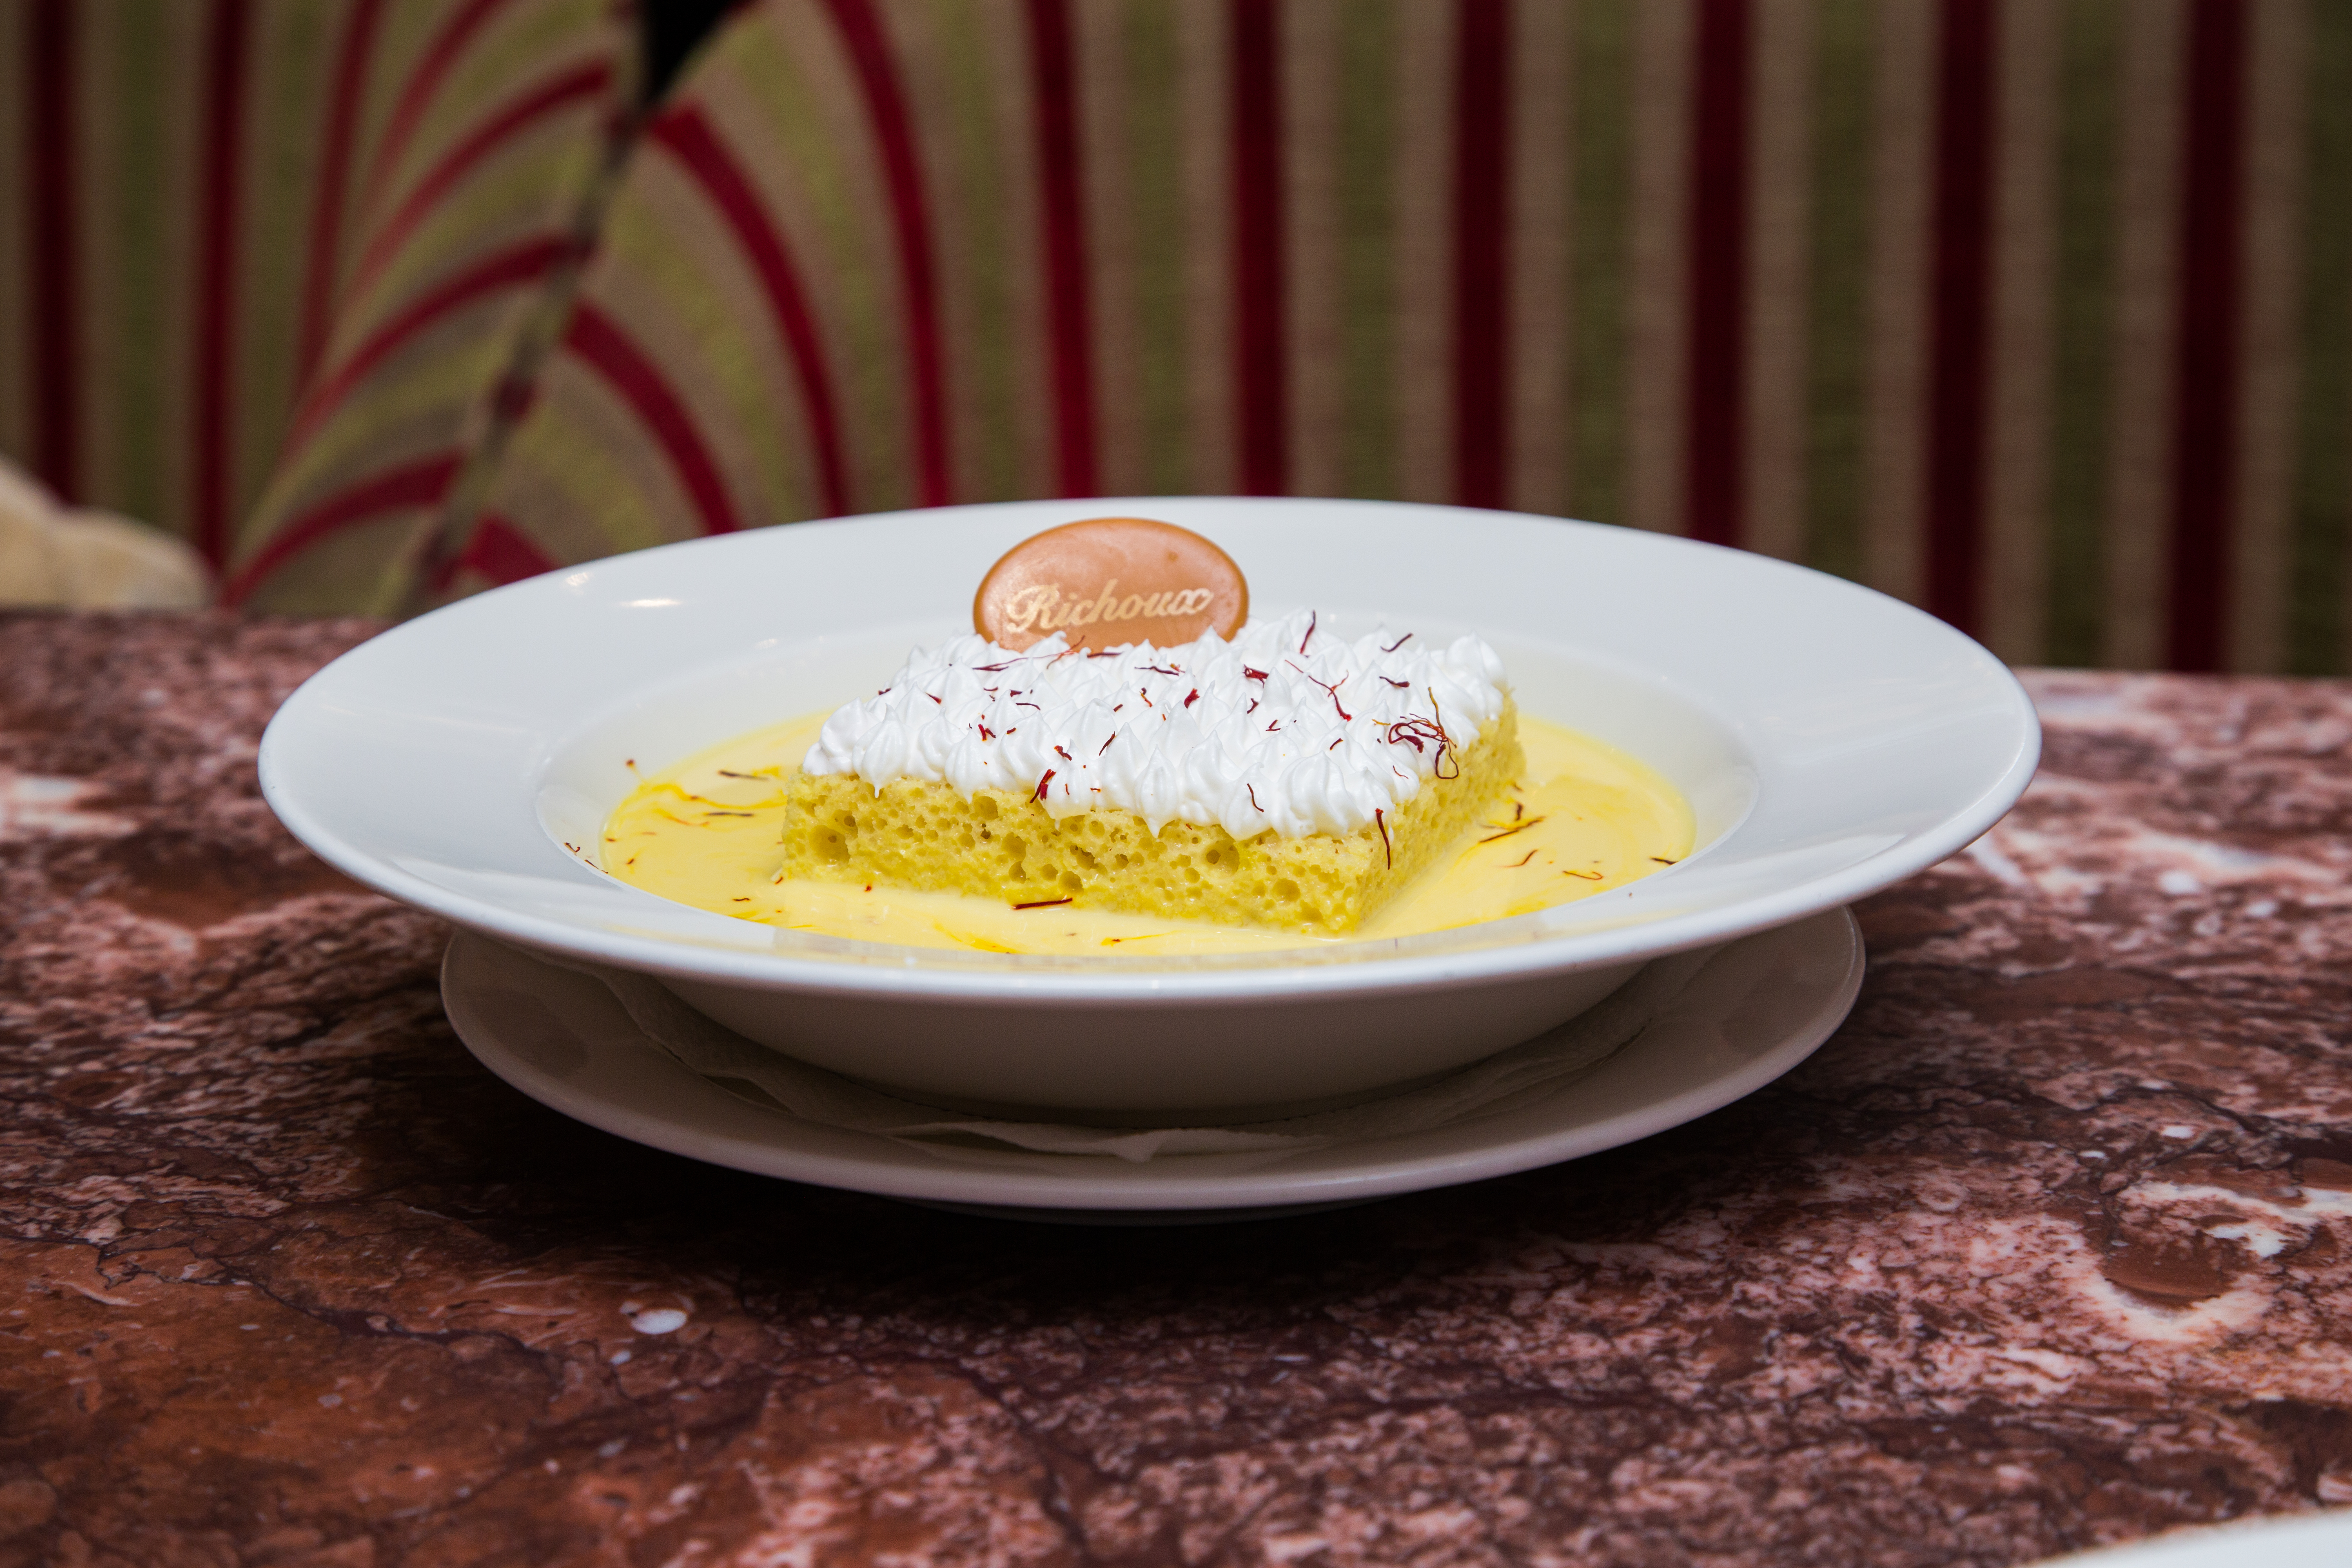 Oman dining: Irresistible milk cake